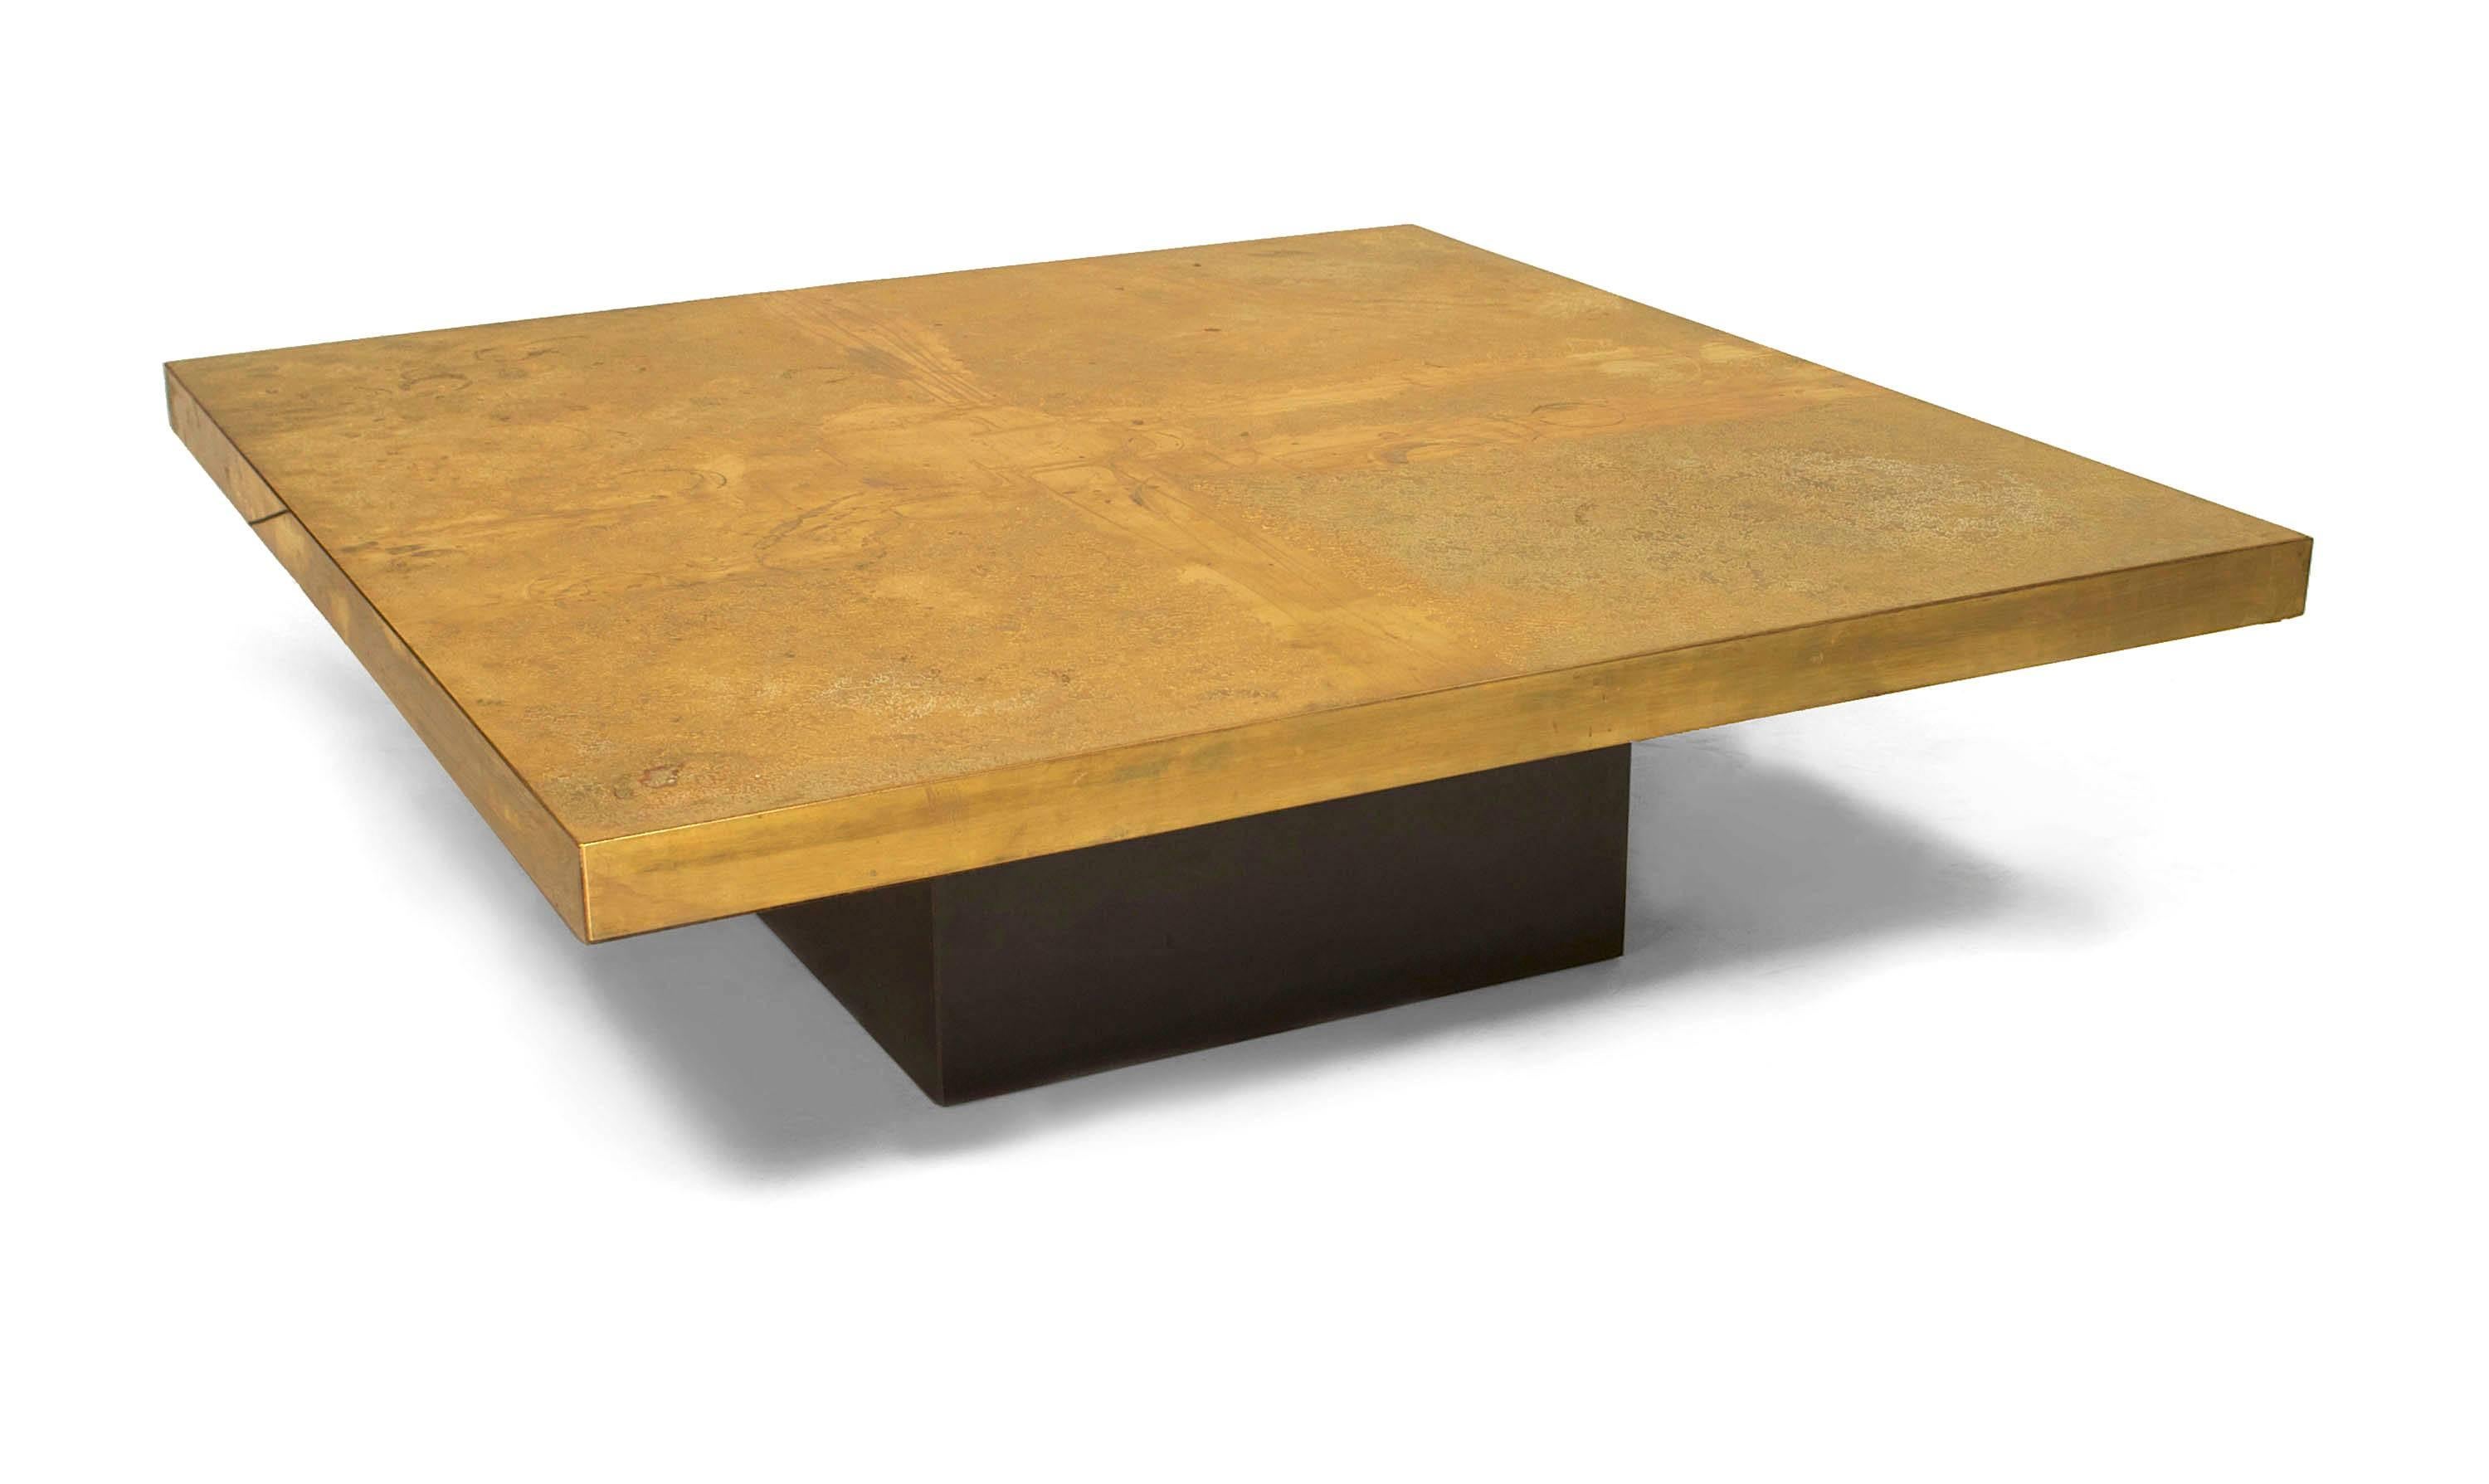 Table basse carrée en laiton gravé, de conception moderne belge (années 1970), avec un design en 